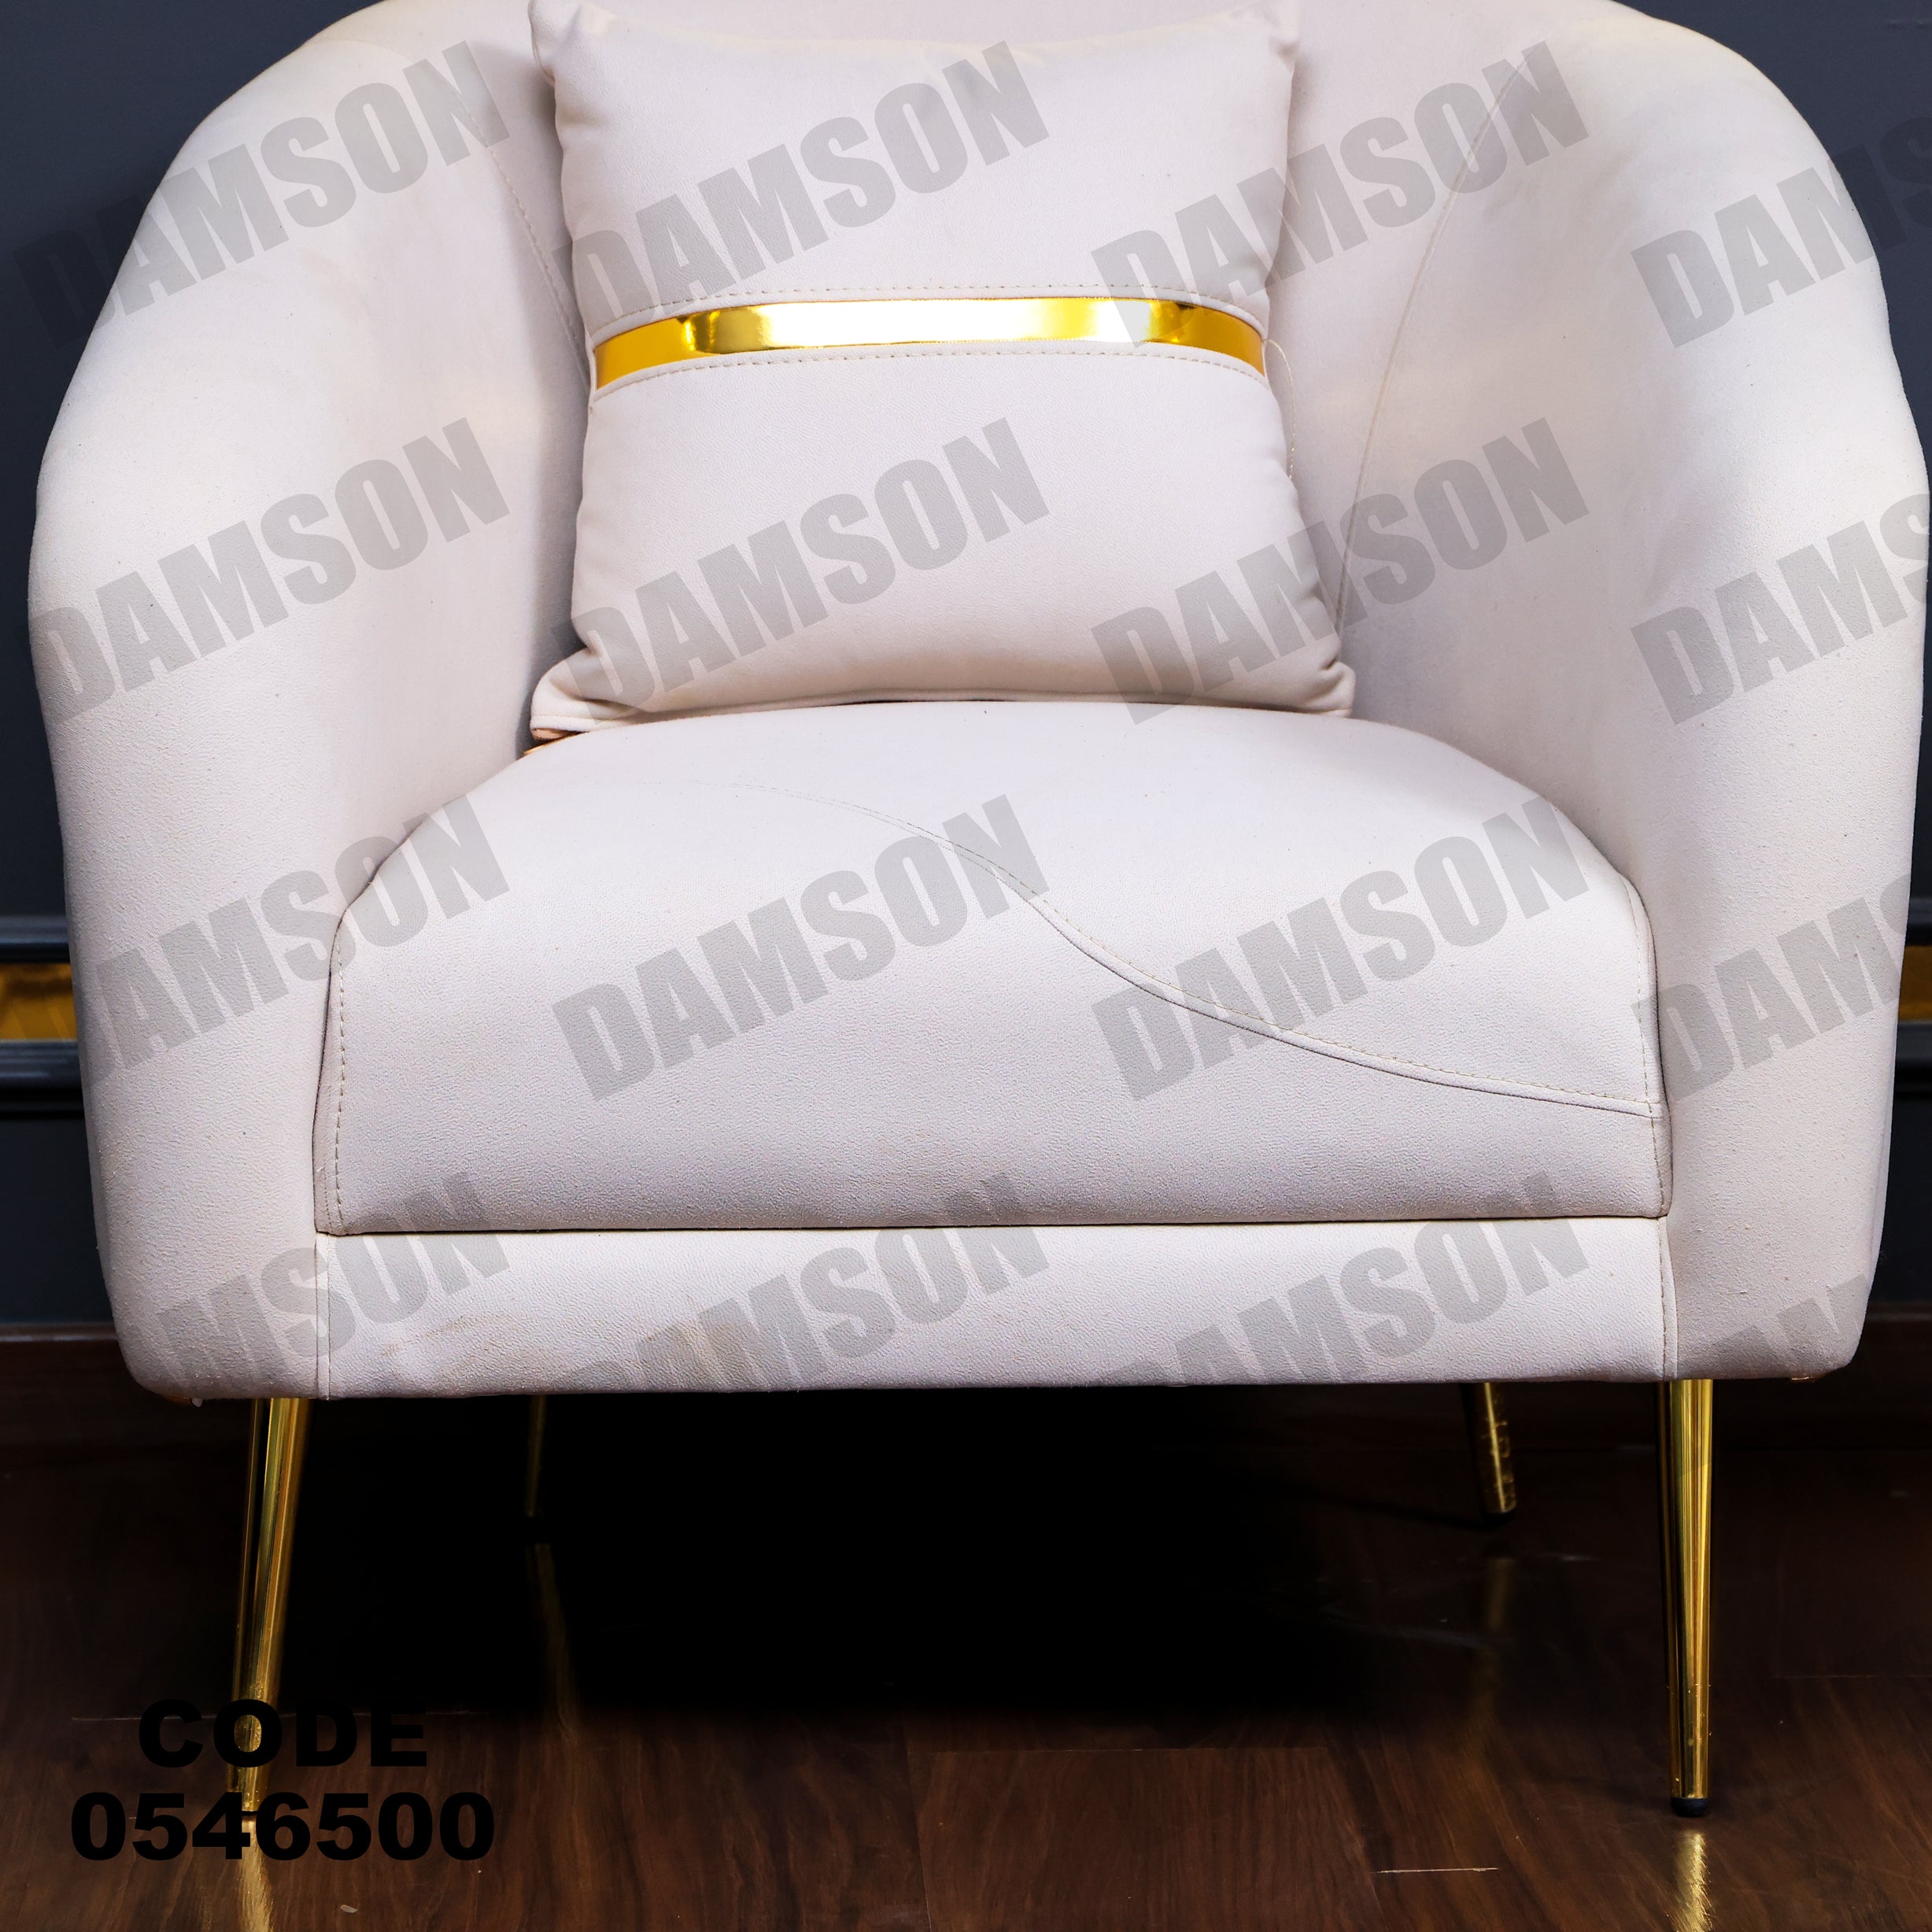 فوتية 2-465 - Damson Furnitureفوتية 2-465